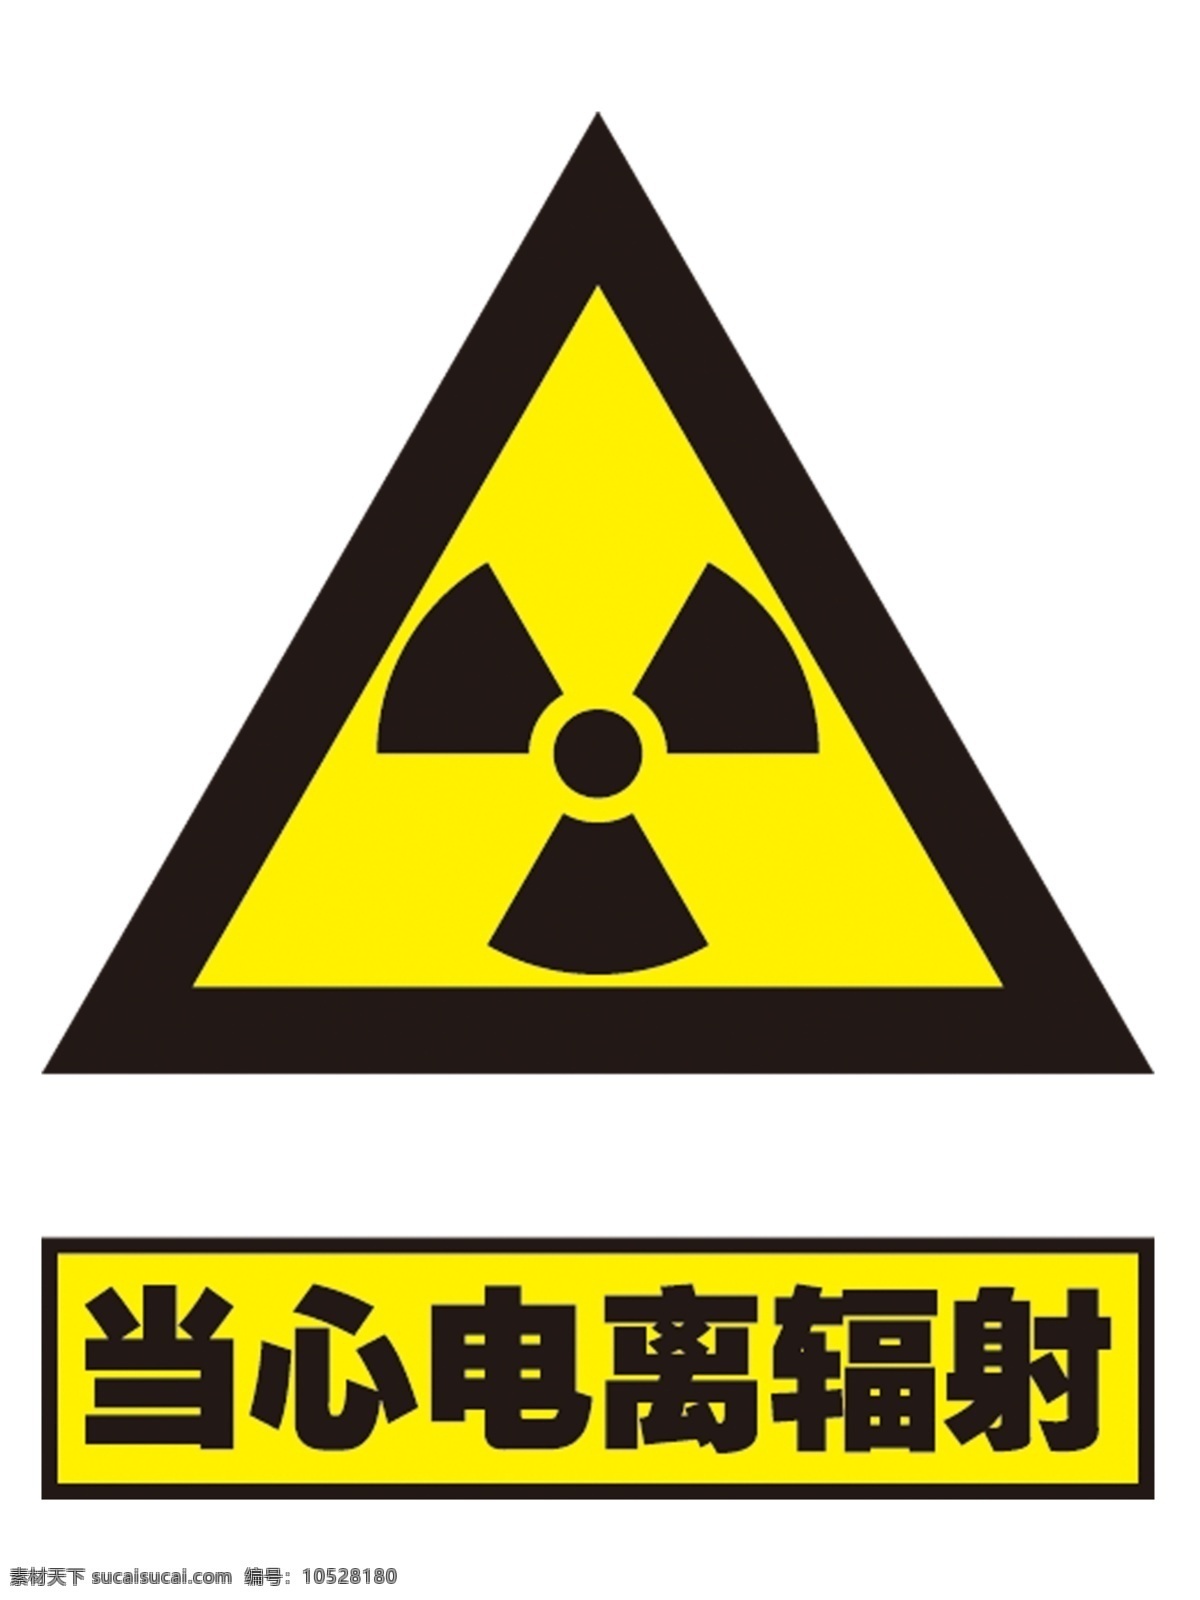 当心 电离 辐射 电离辐射 当心辐射 当心电离辐射 国标 安全标识 标志图标 公共标识标志